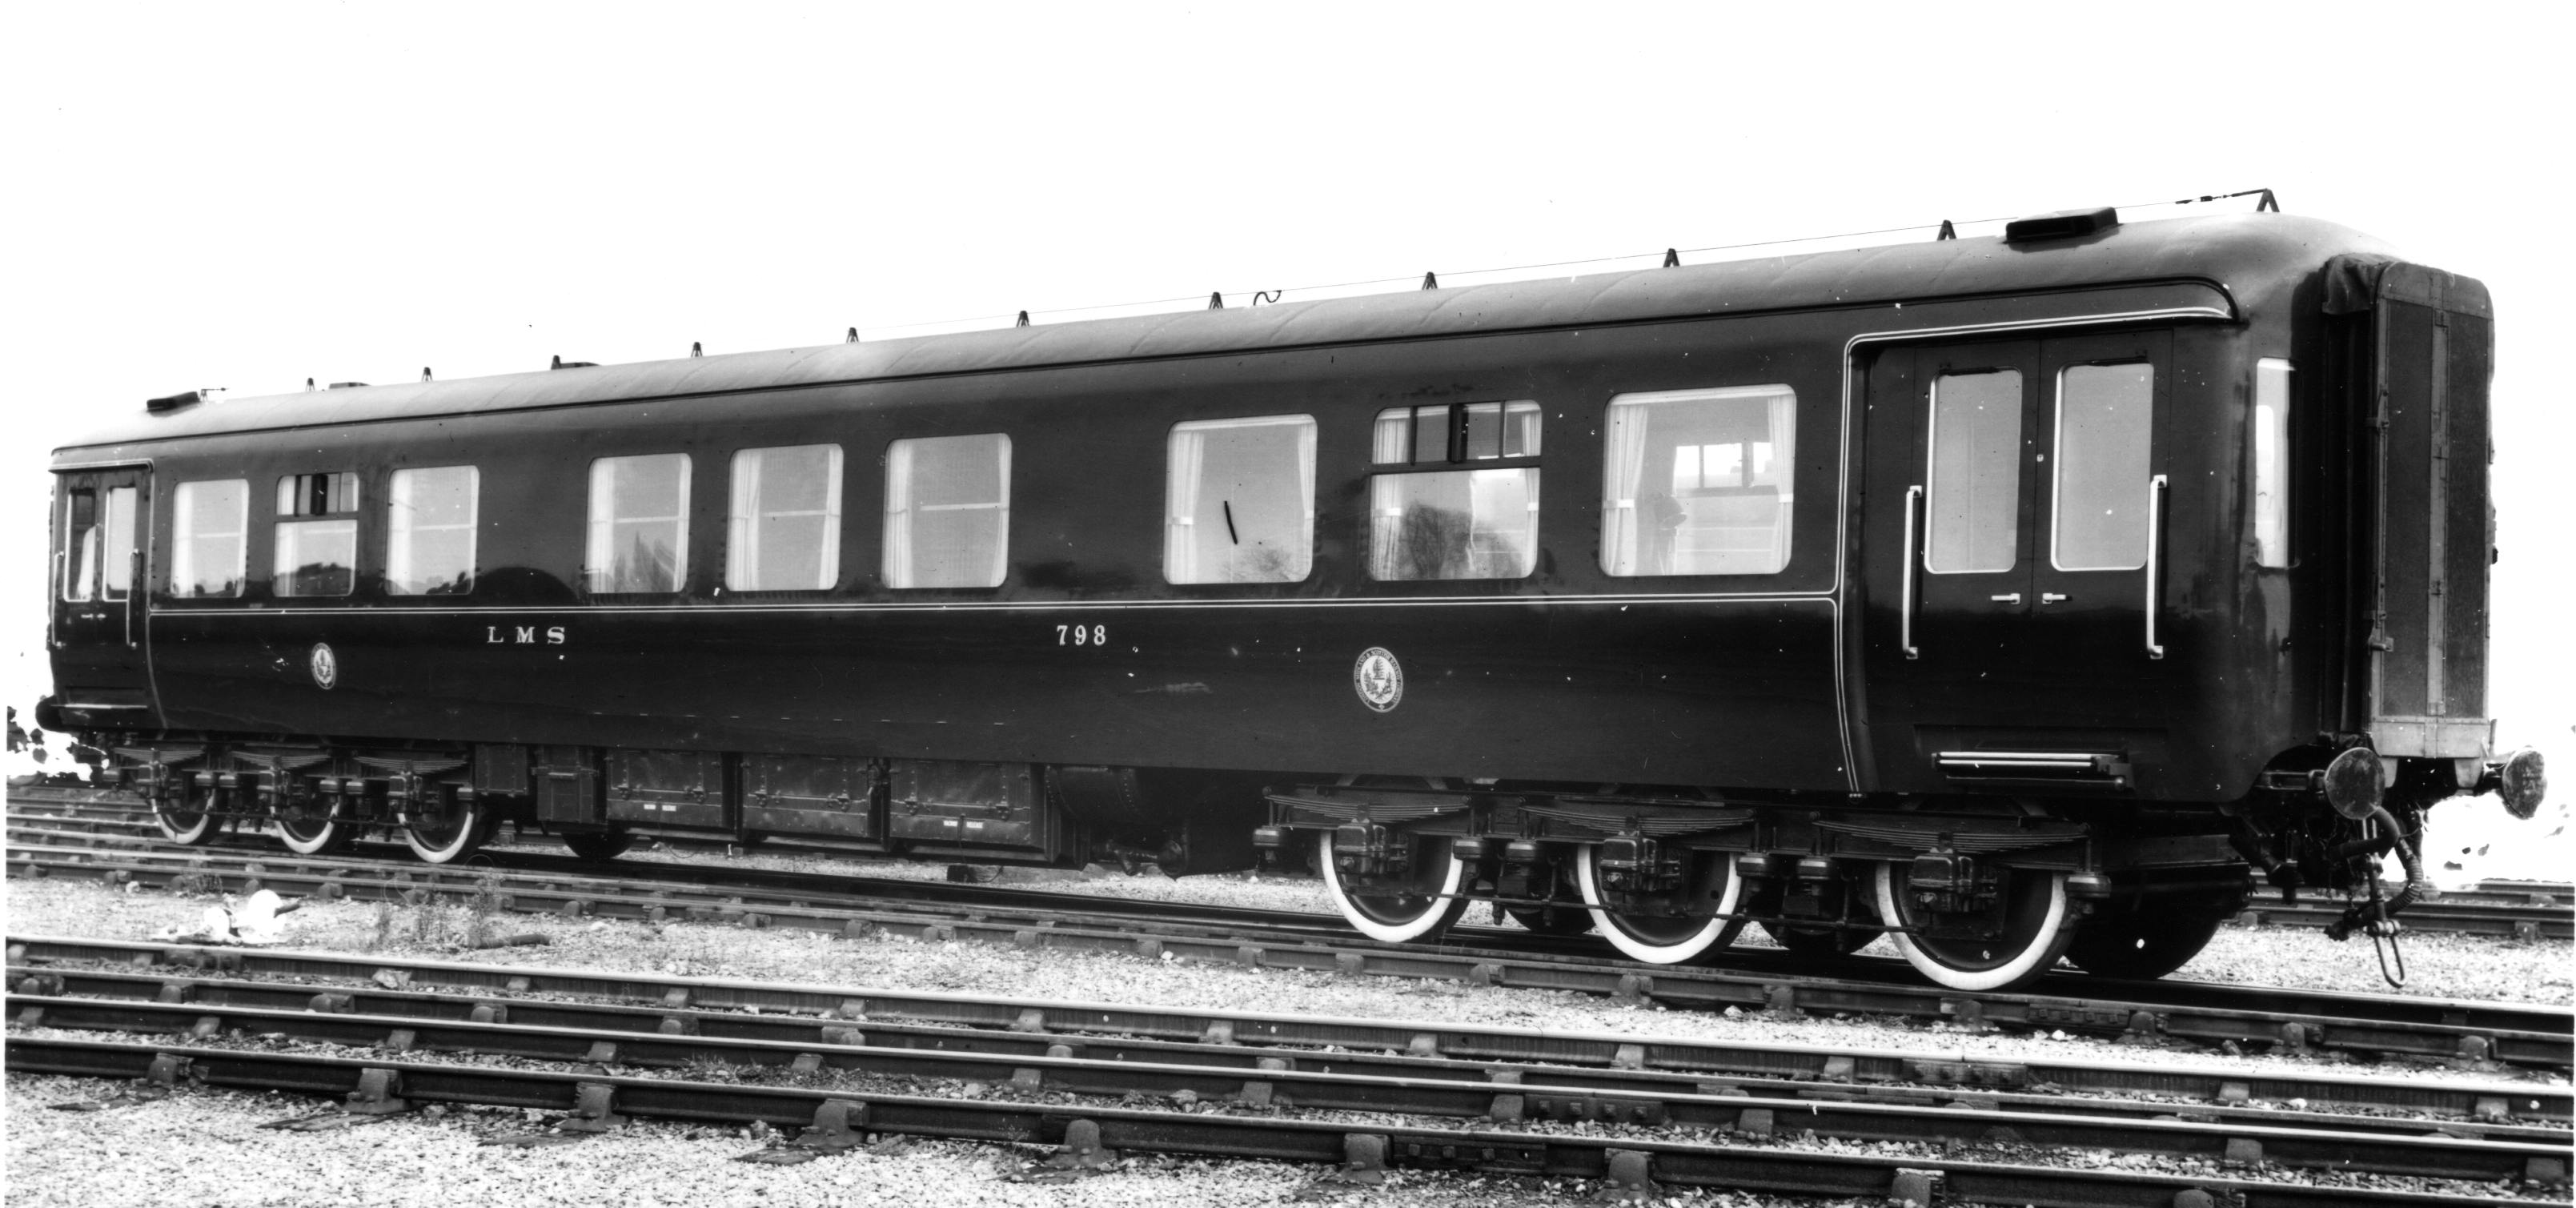 Royal train, Queen's saloon carriage.jpg